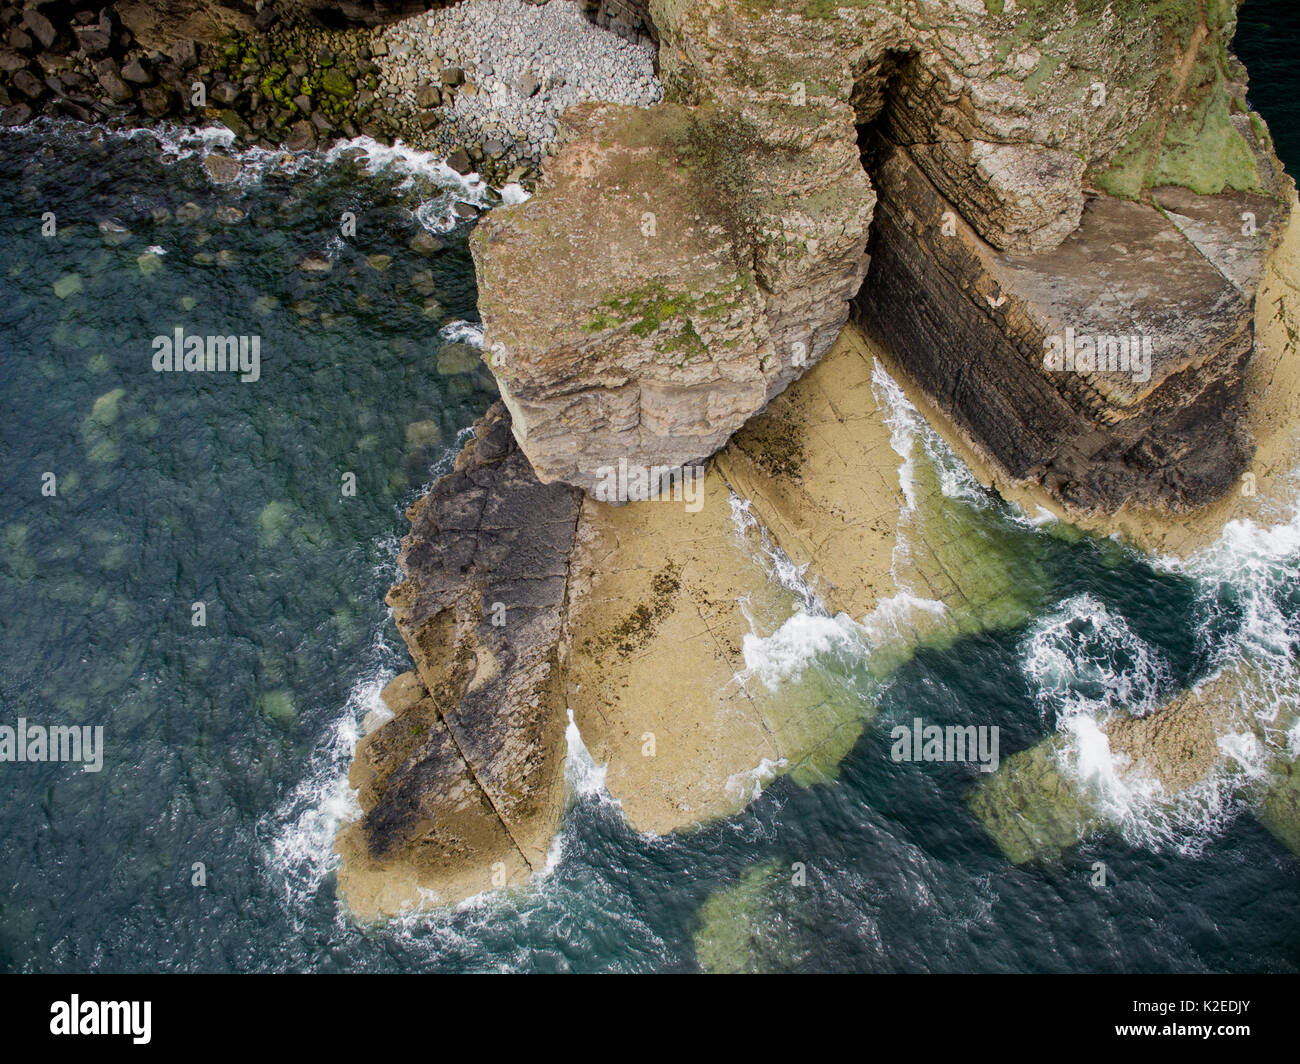 Vista aérea de la onda corta de la plataforma en las rocas sedimentarias de edad Ordovícico en Wylfa Trwyn, Abersoch, Gales, Reino Unido. Las olas han explotado una cama firme plano y las rocas erosionadas. Foto de stock